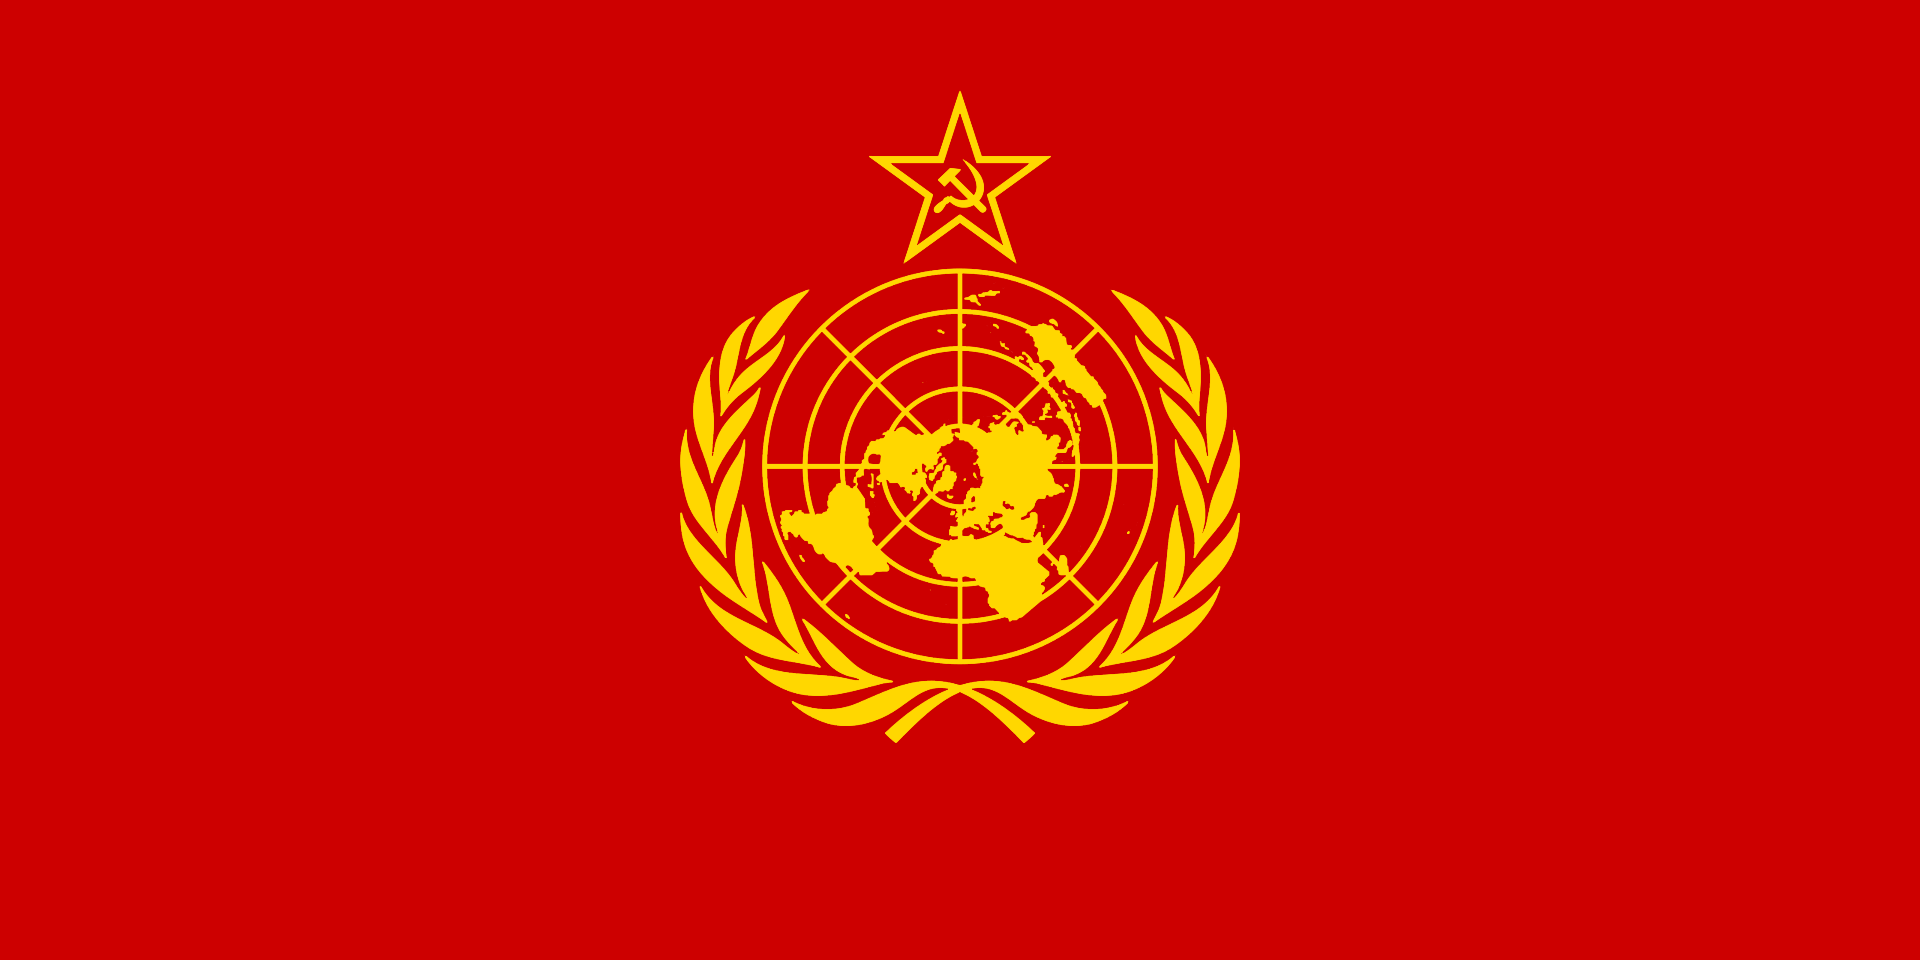 Идея великой азии ссср. Флаг коммунистического ООН. Флаг Коминтерна. Флаг коммунистического Интернационала. Флаг Коммунистической партии СССР.